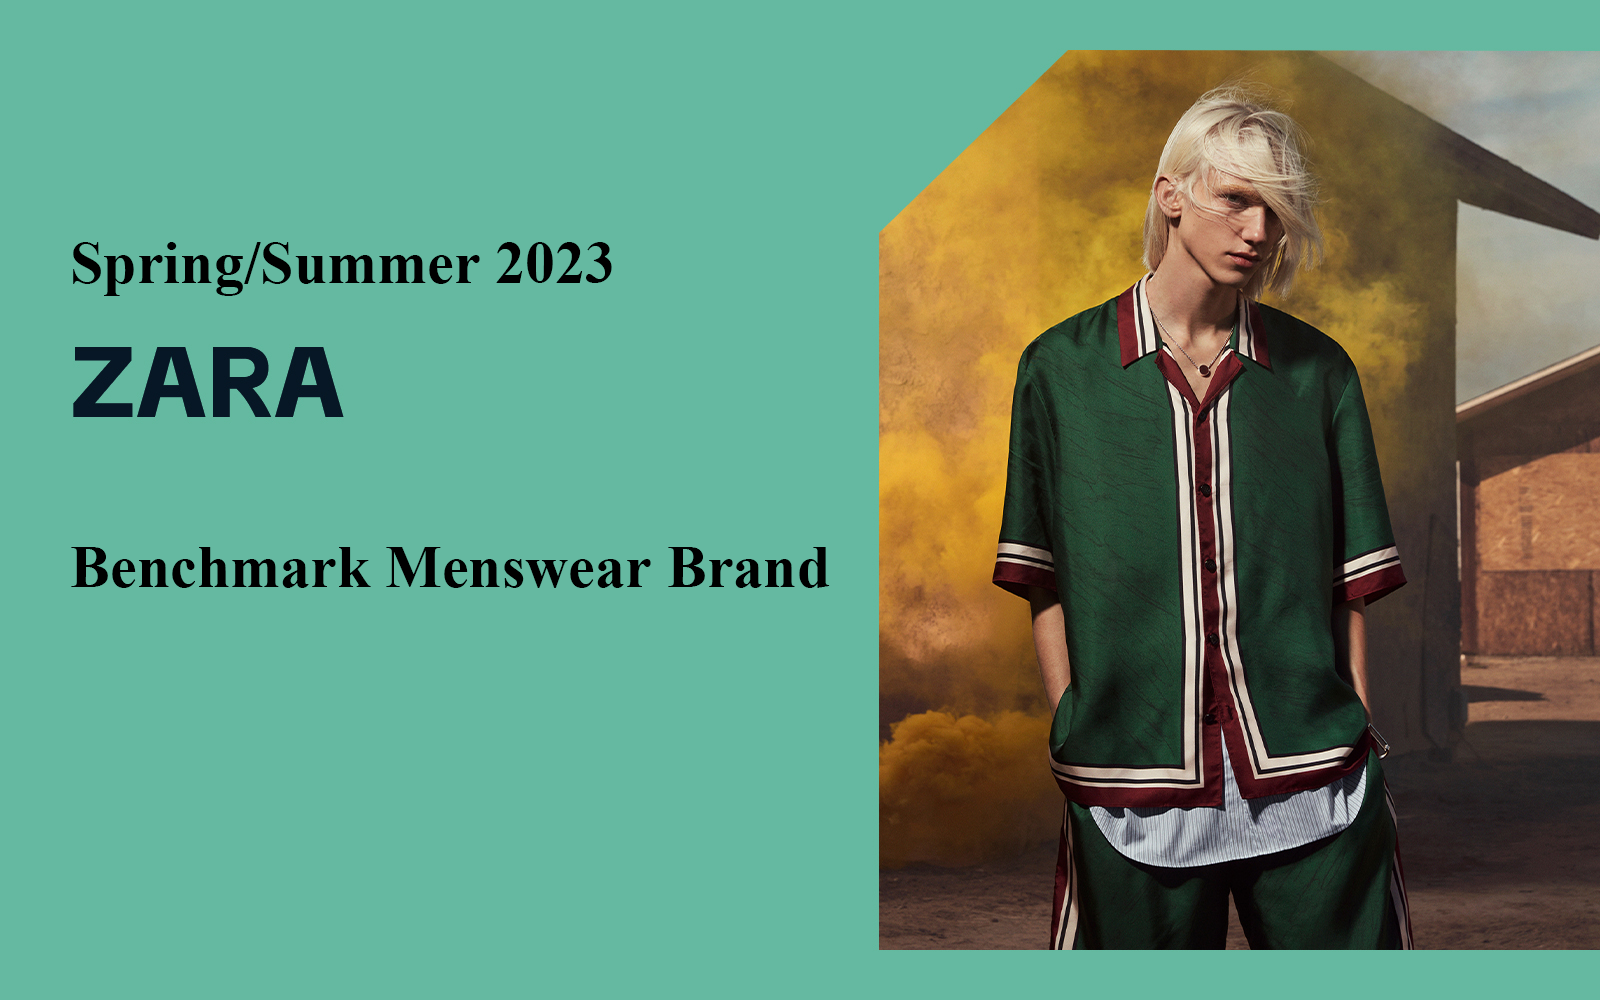 Rebuild Street Fashion -- The Analysis of Zara The Benchmark Menswear Brand